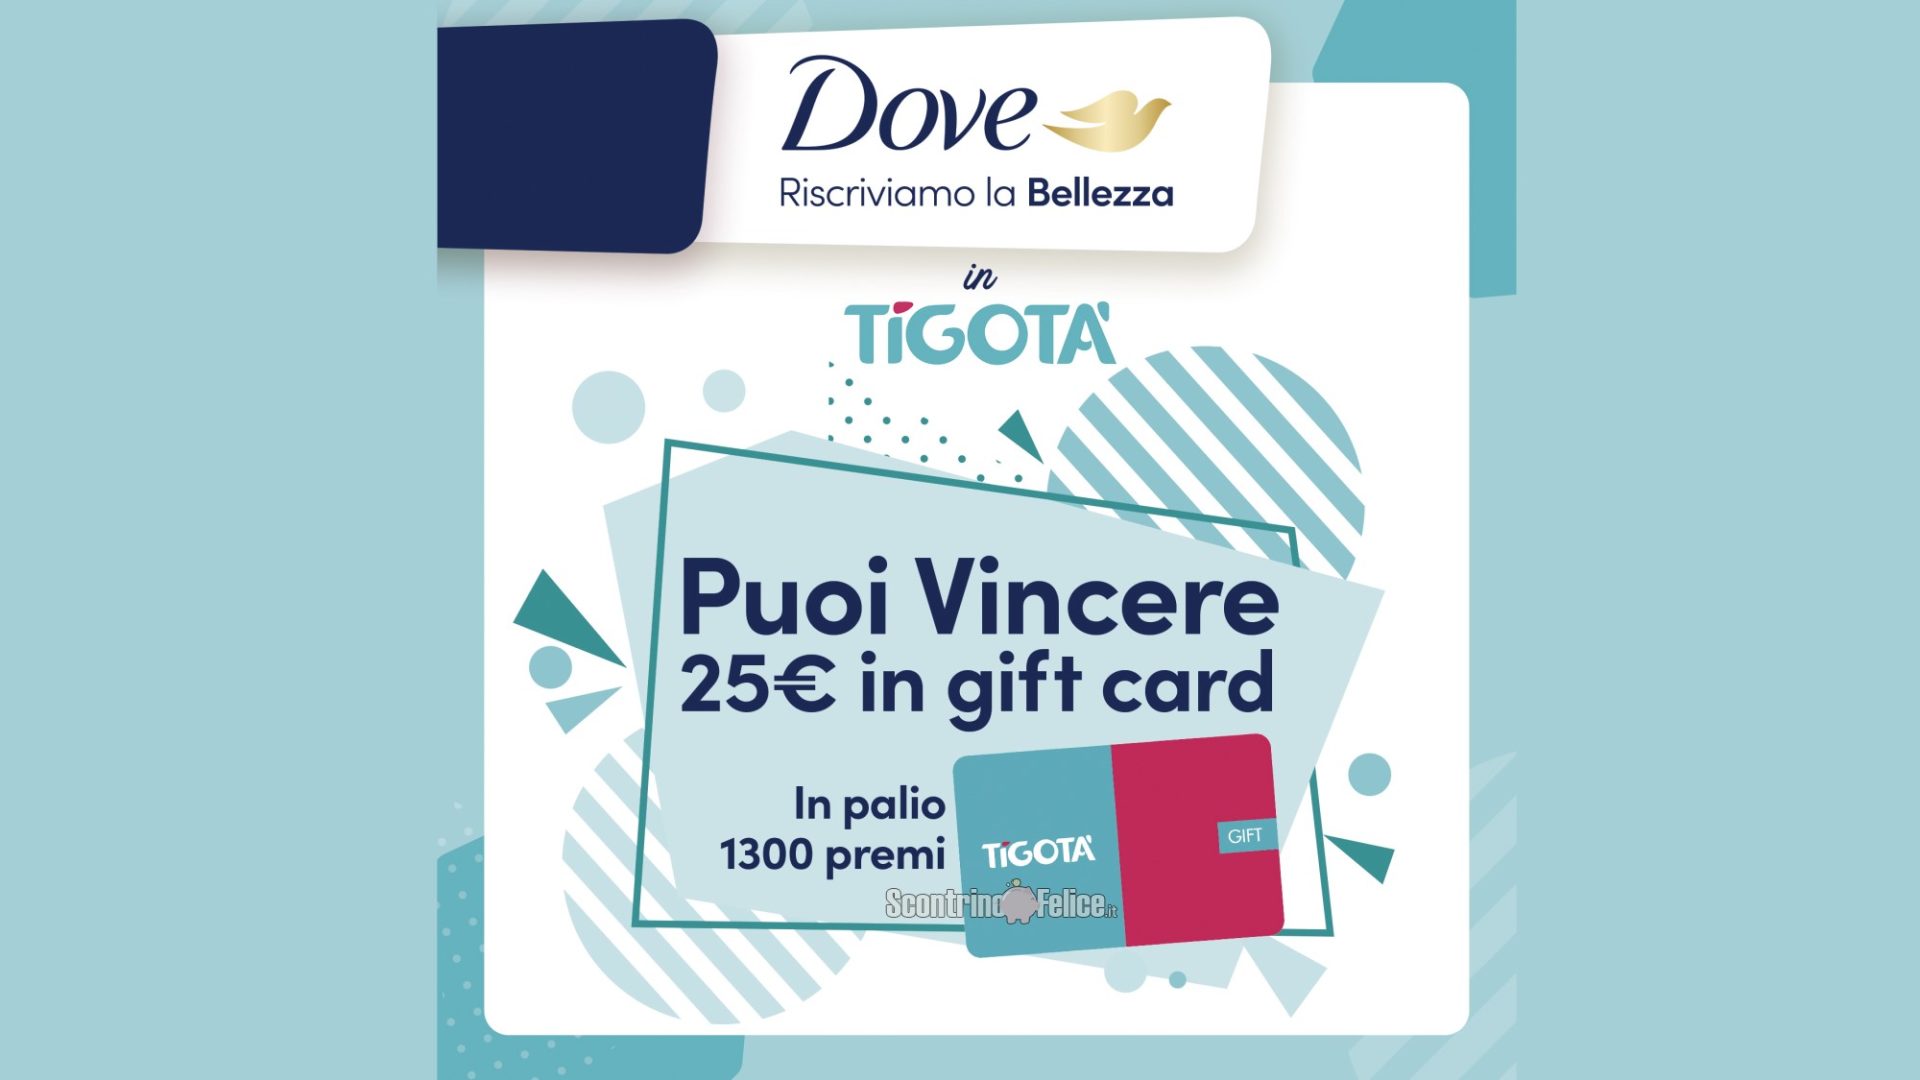 Concorso Dove da Tigotà: vinci 1300 gift card da 25 euro